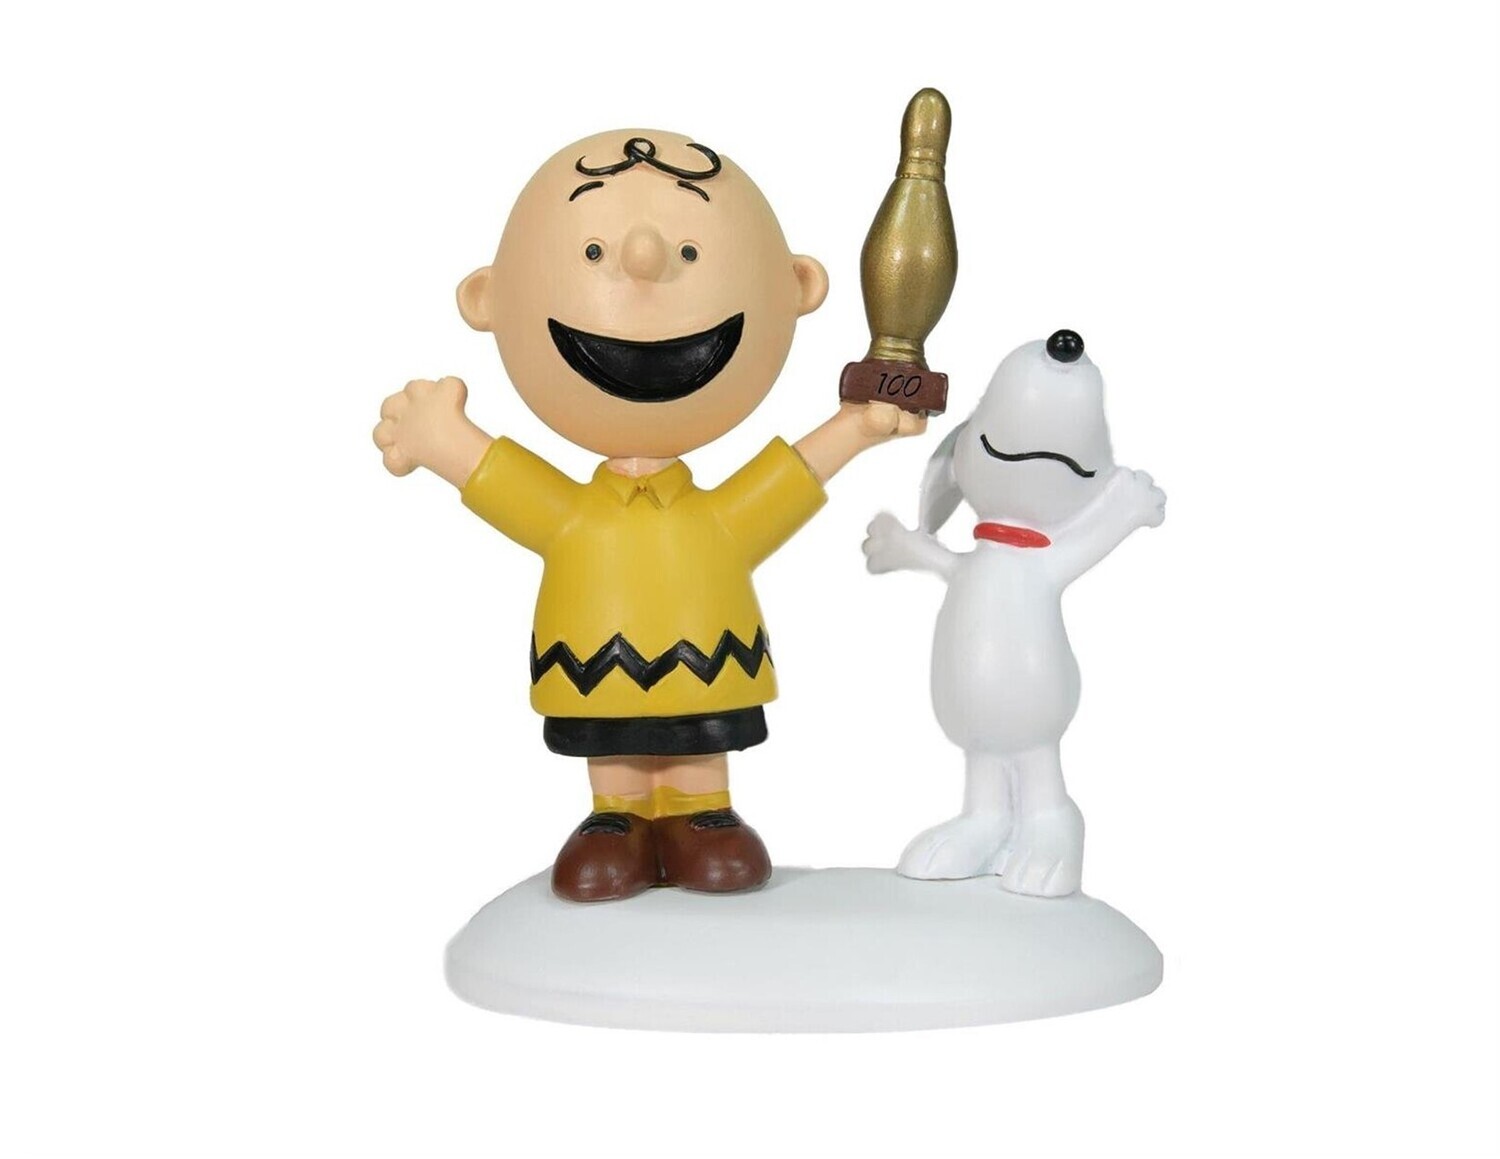 Department 56 Peanuts Village "Charlie Brown Breaks 100" Figurine (6009841)